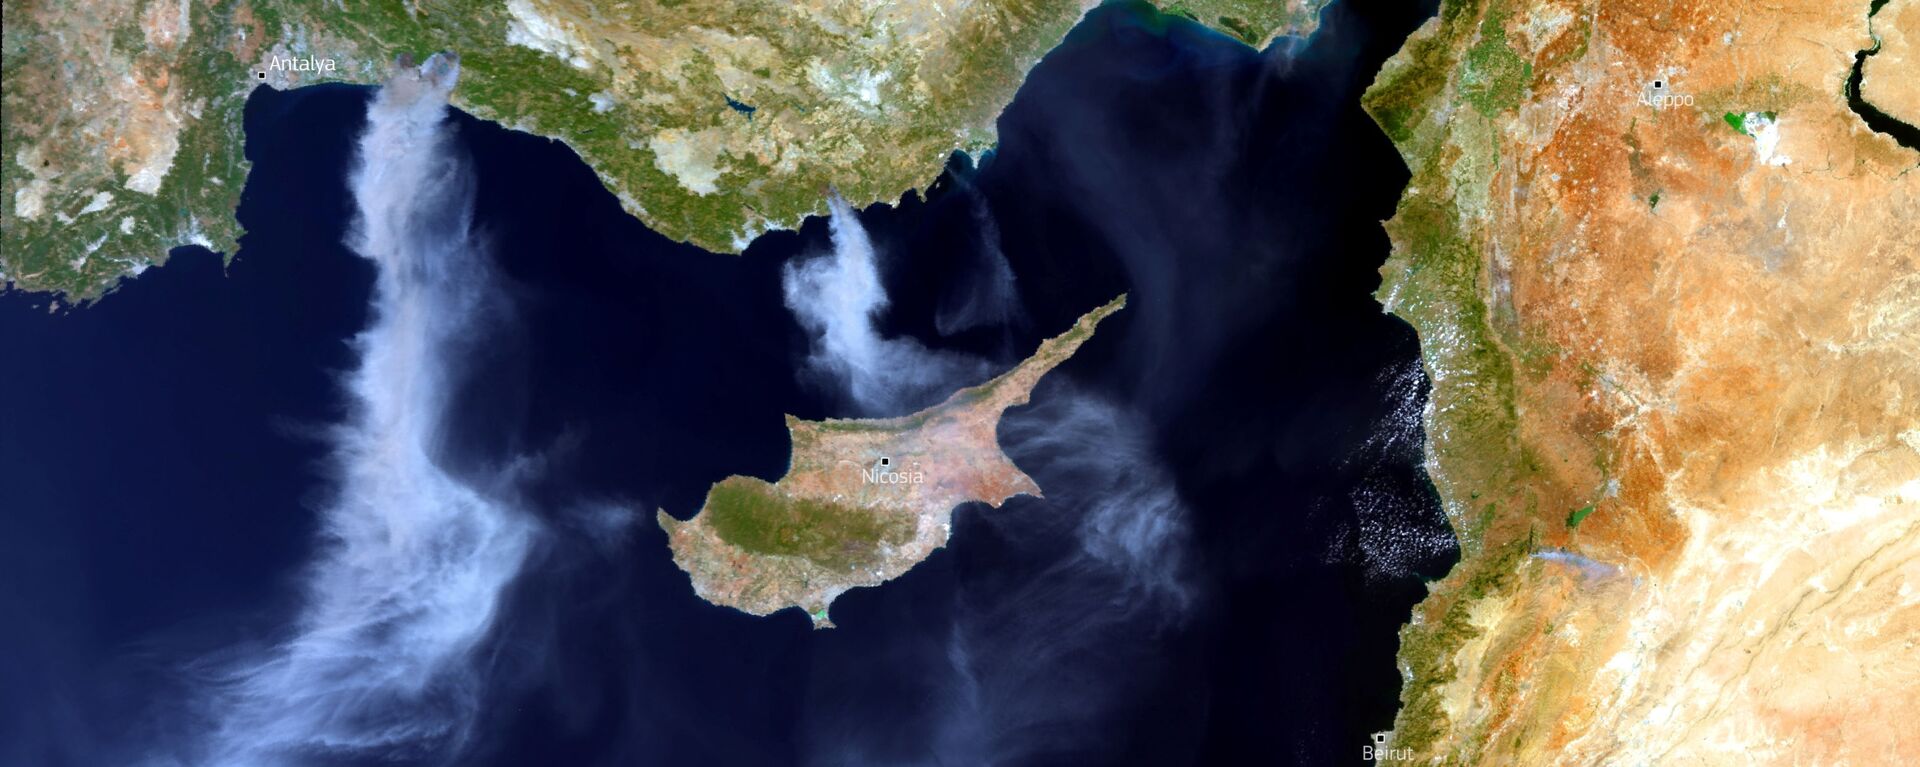 Hình ảnh vệ tinh về cháy rừng ở Thổ Nhĩ Kỳ - Sputnik Việt Nam, 1920, 02.08.2021